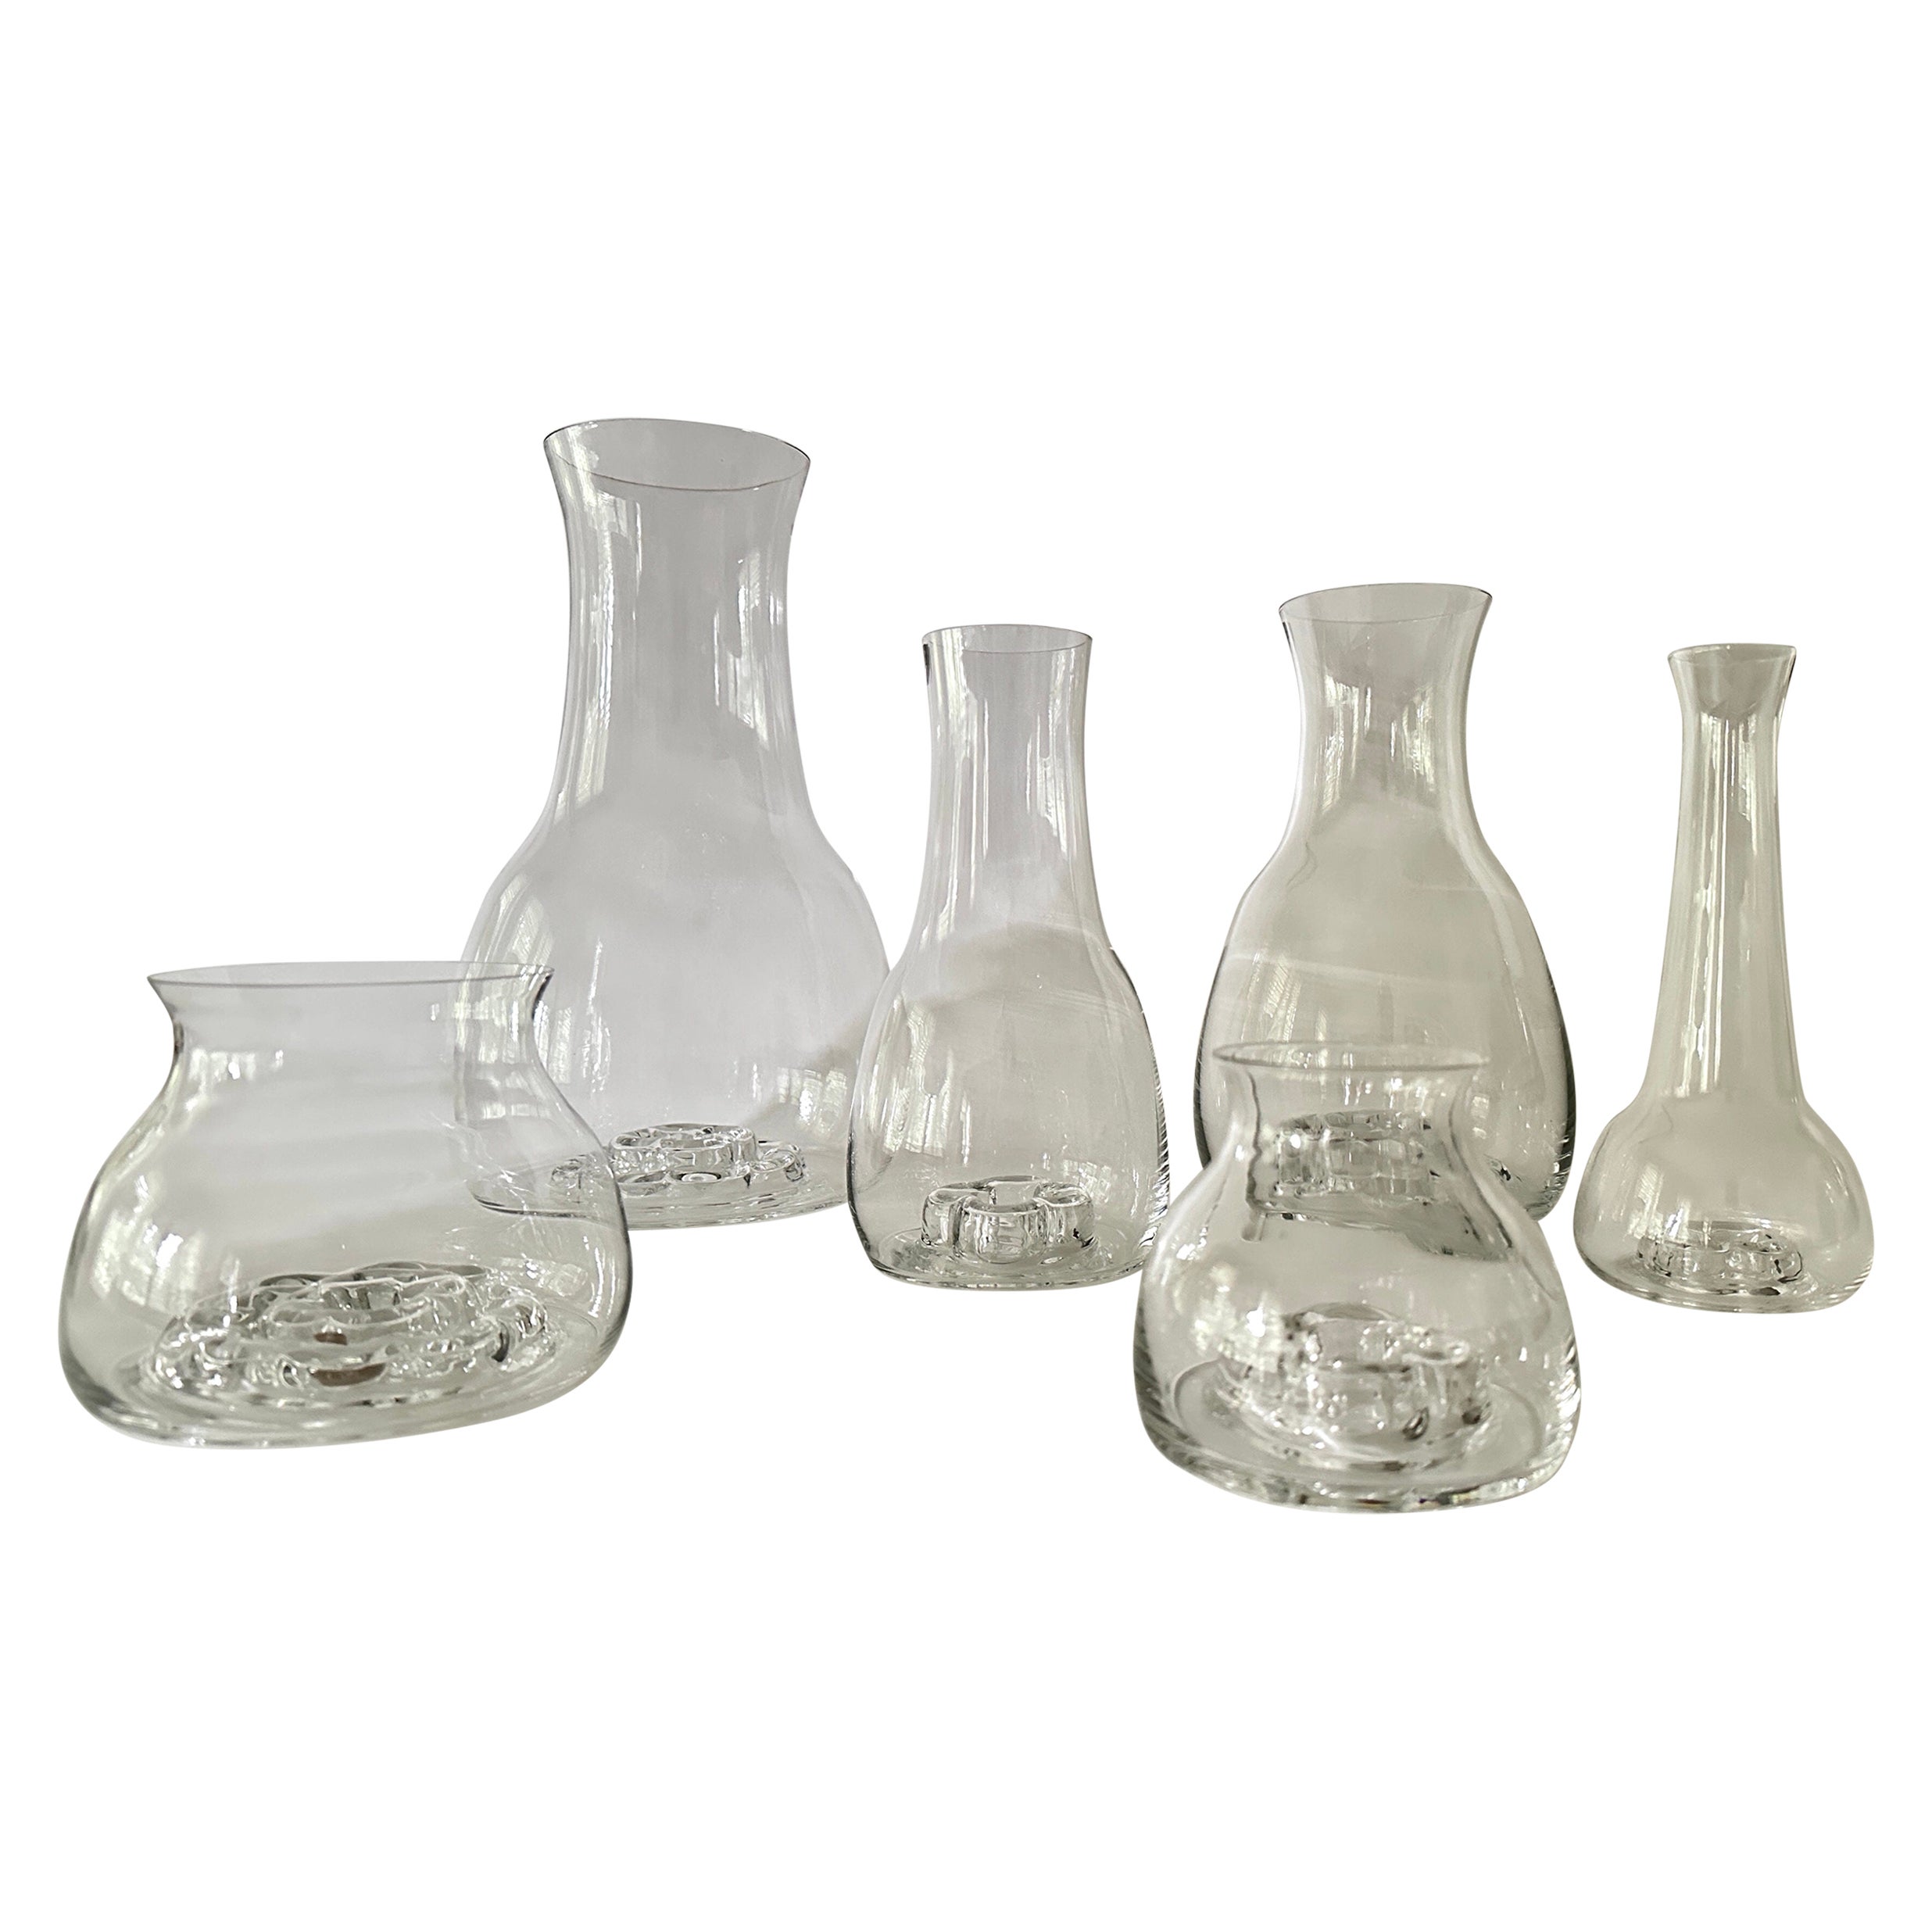 Sechs klare, von Olle Alberius entworfene Vasen von Orrefors